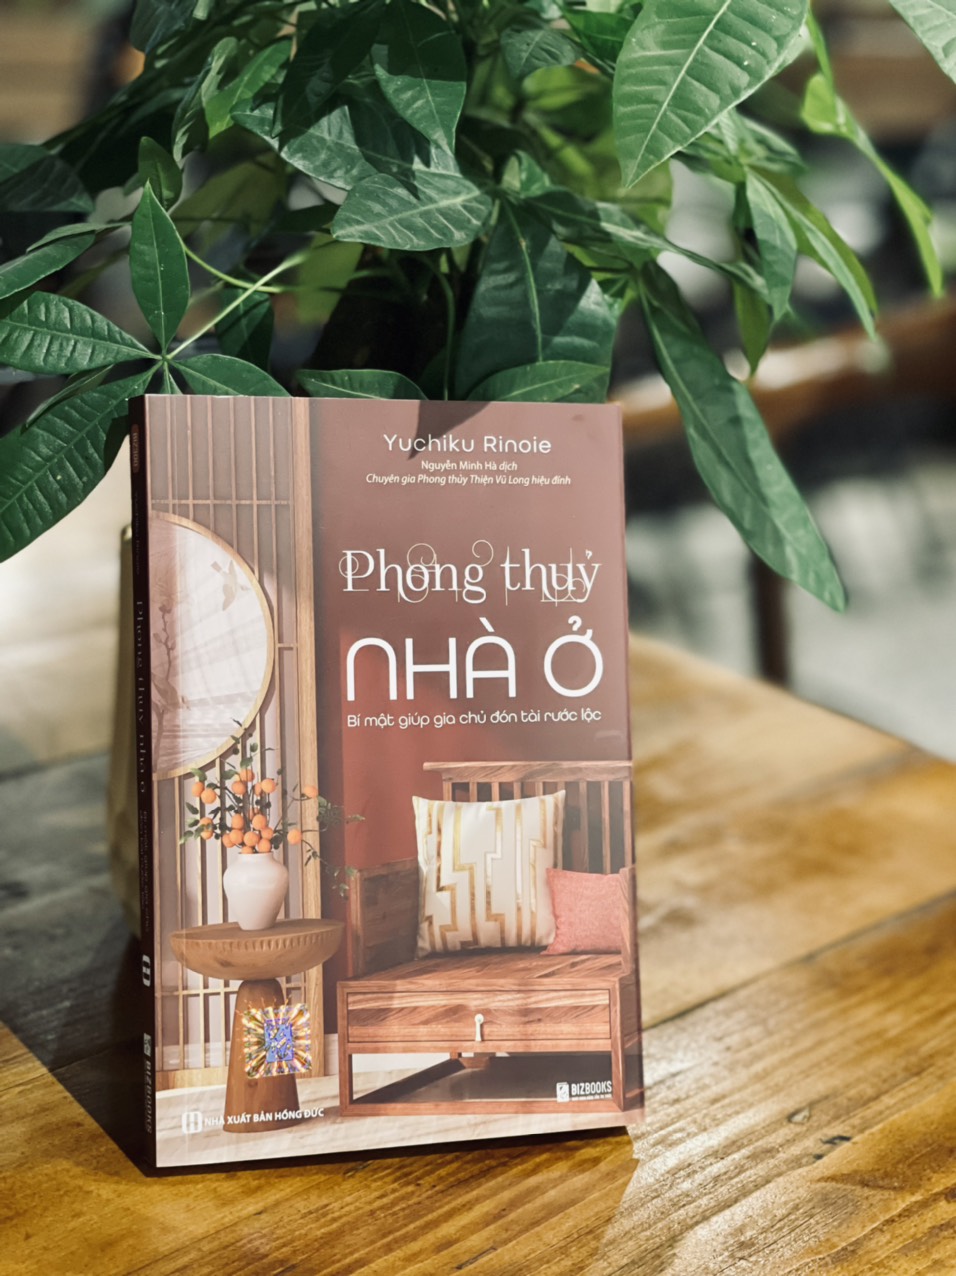 PHONG THỦY NHÀ Ở - Bí mật giúp gia chủ đón tài rước lộc - Yuchiku Rinoie - Nguyễn Minh Hà dịch – Bizbooks – bìa mềm